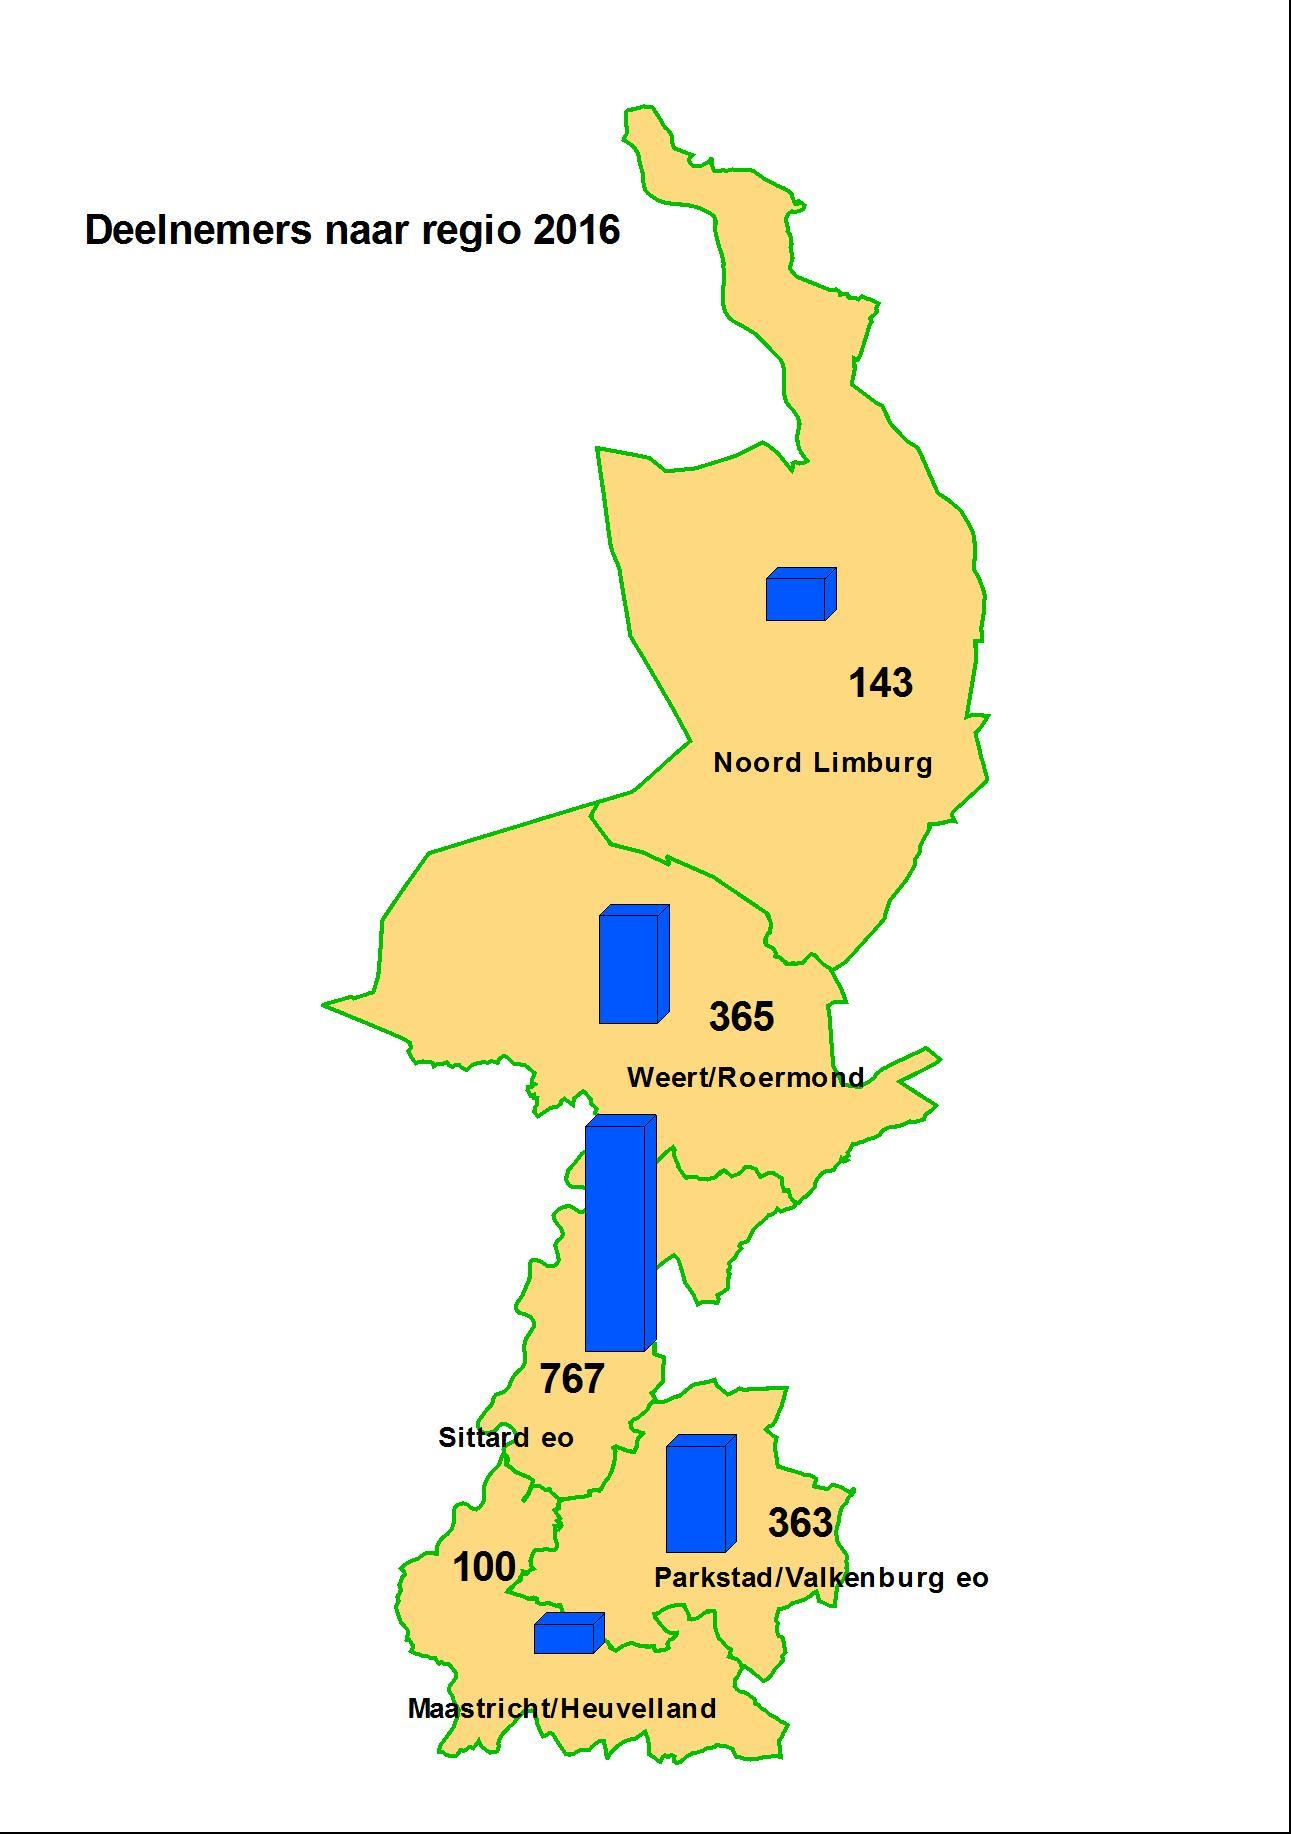 Deelnemers uit de provincie Limburg komen uiteraard vooral uit de regio Sittard.